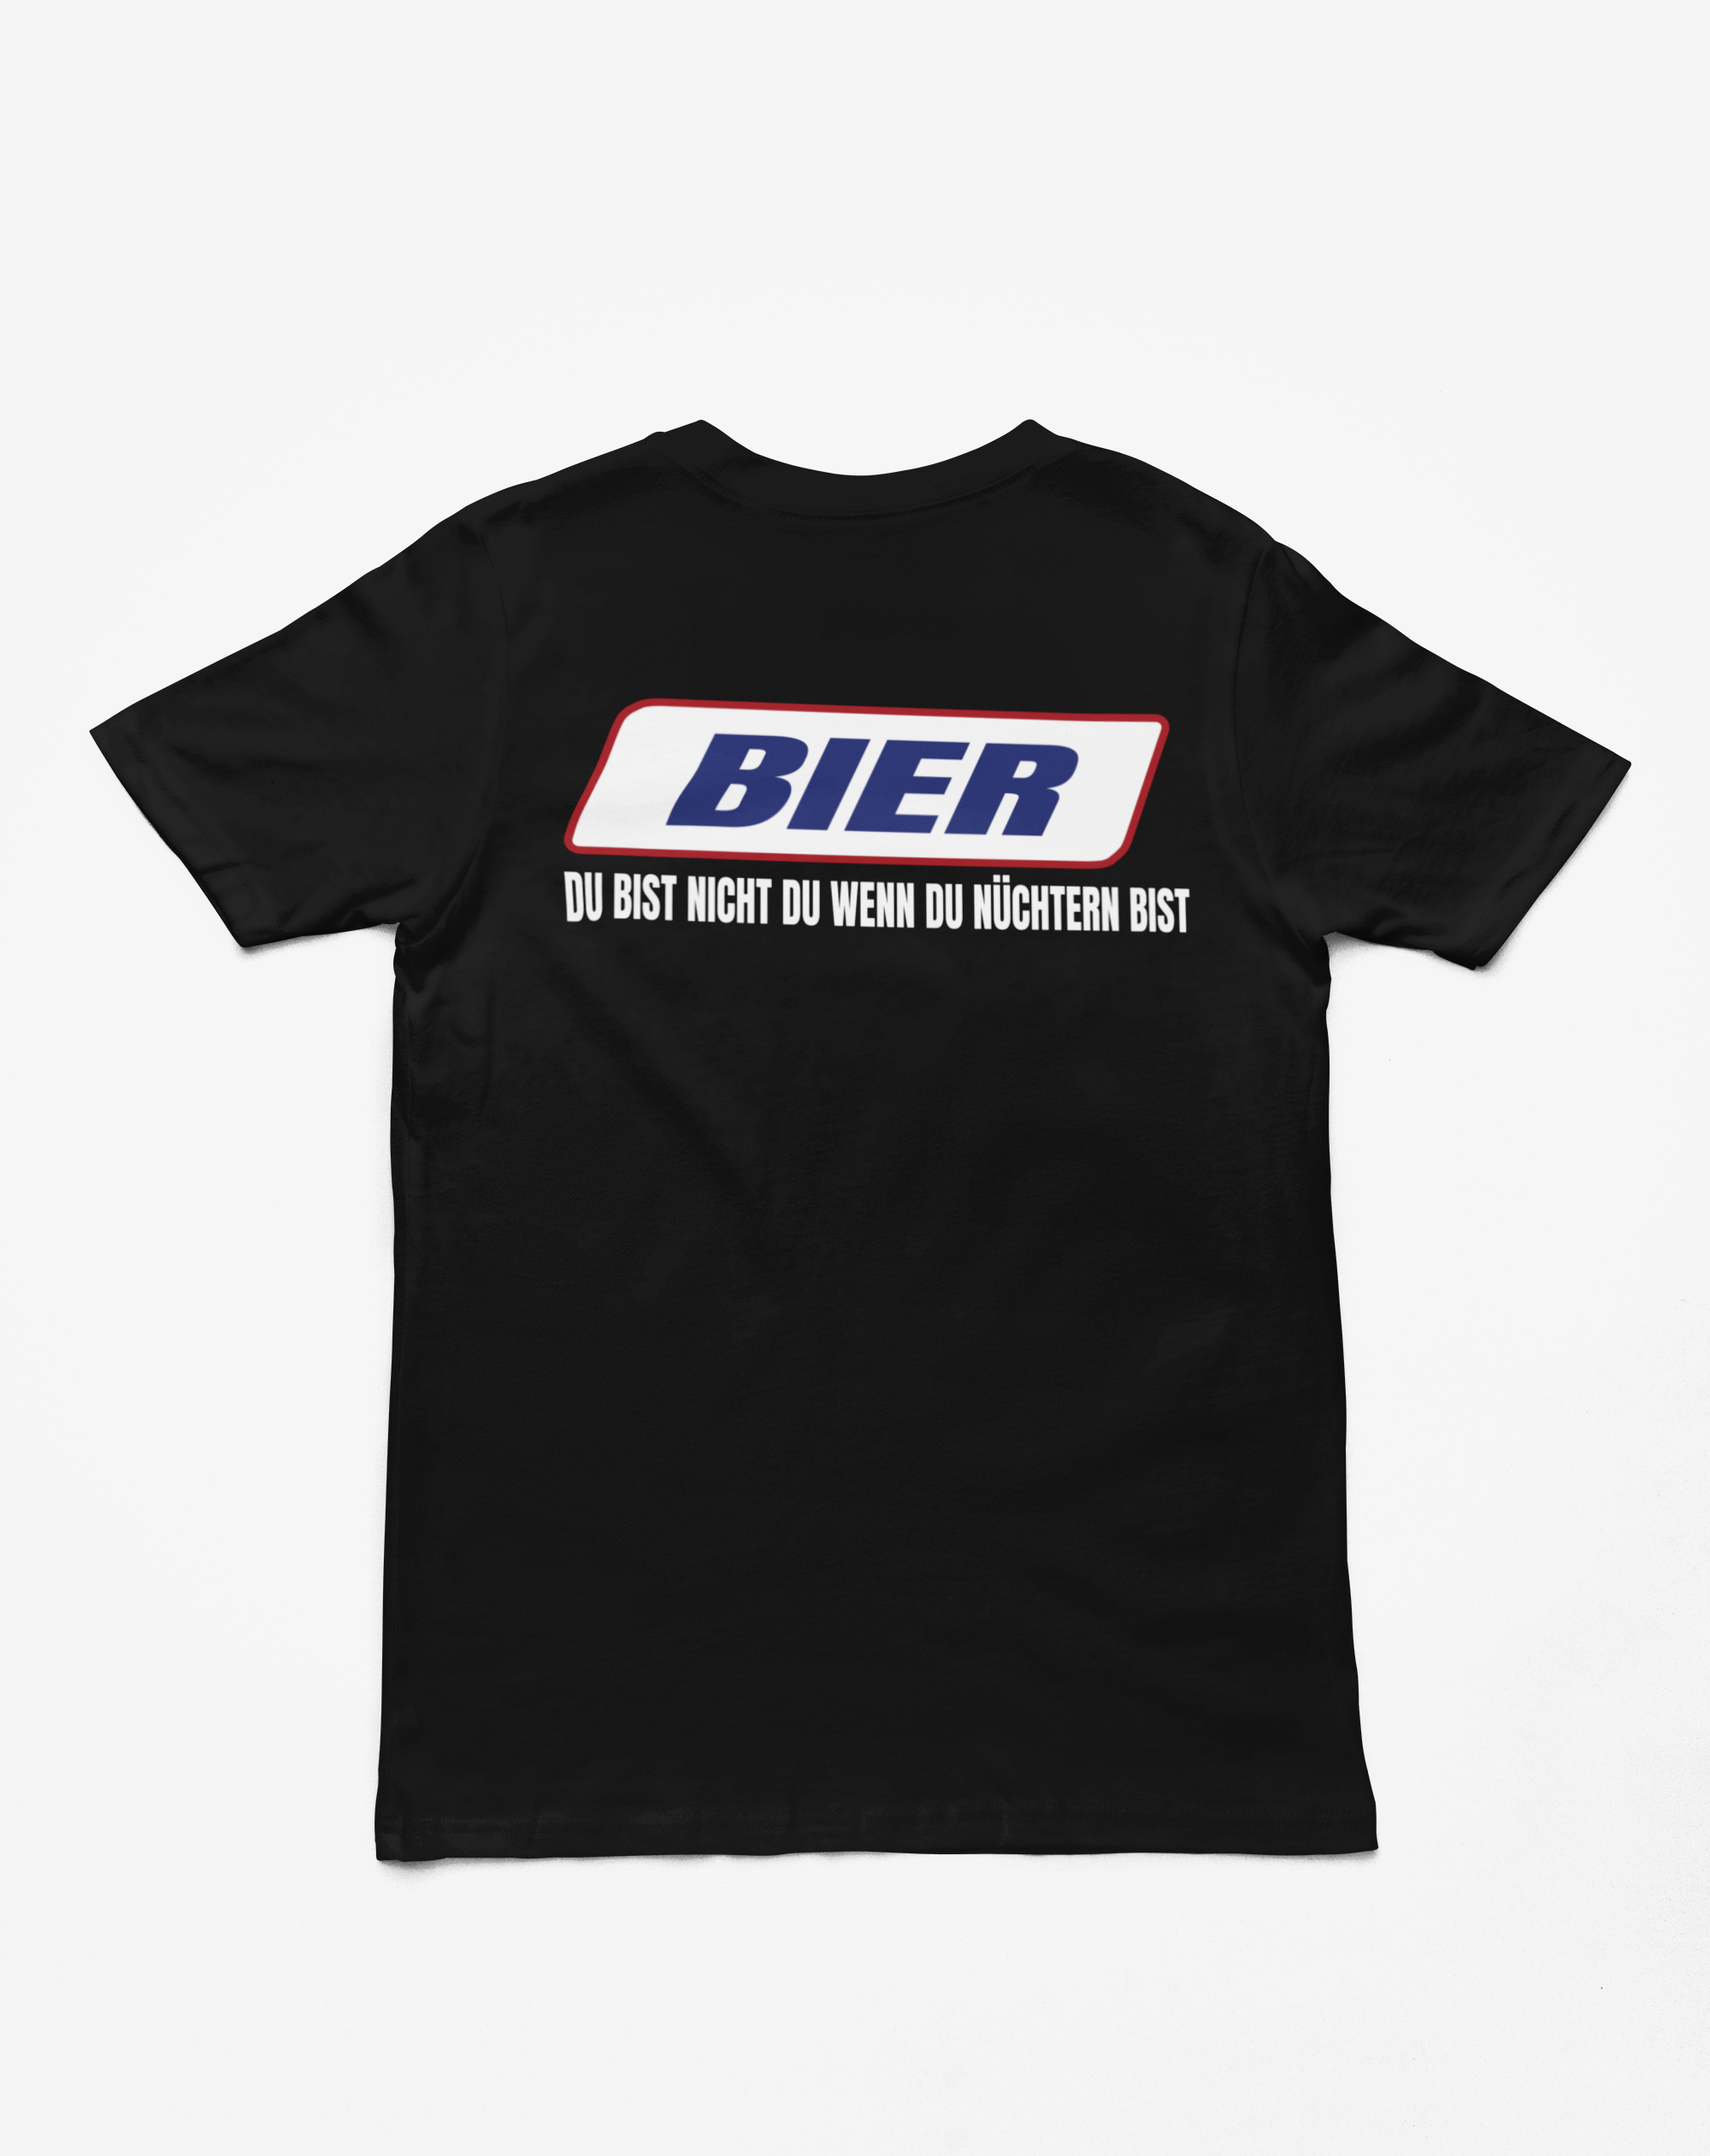 "Bier - Du bist nicht du" T-Shirt